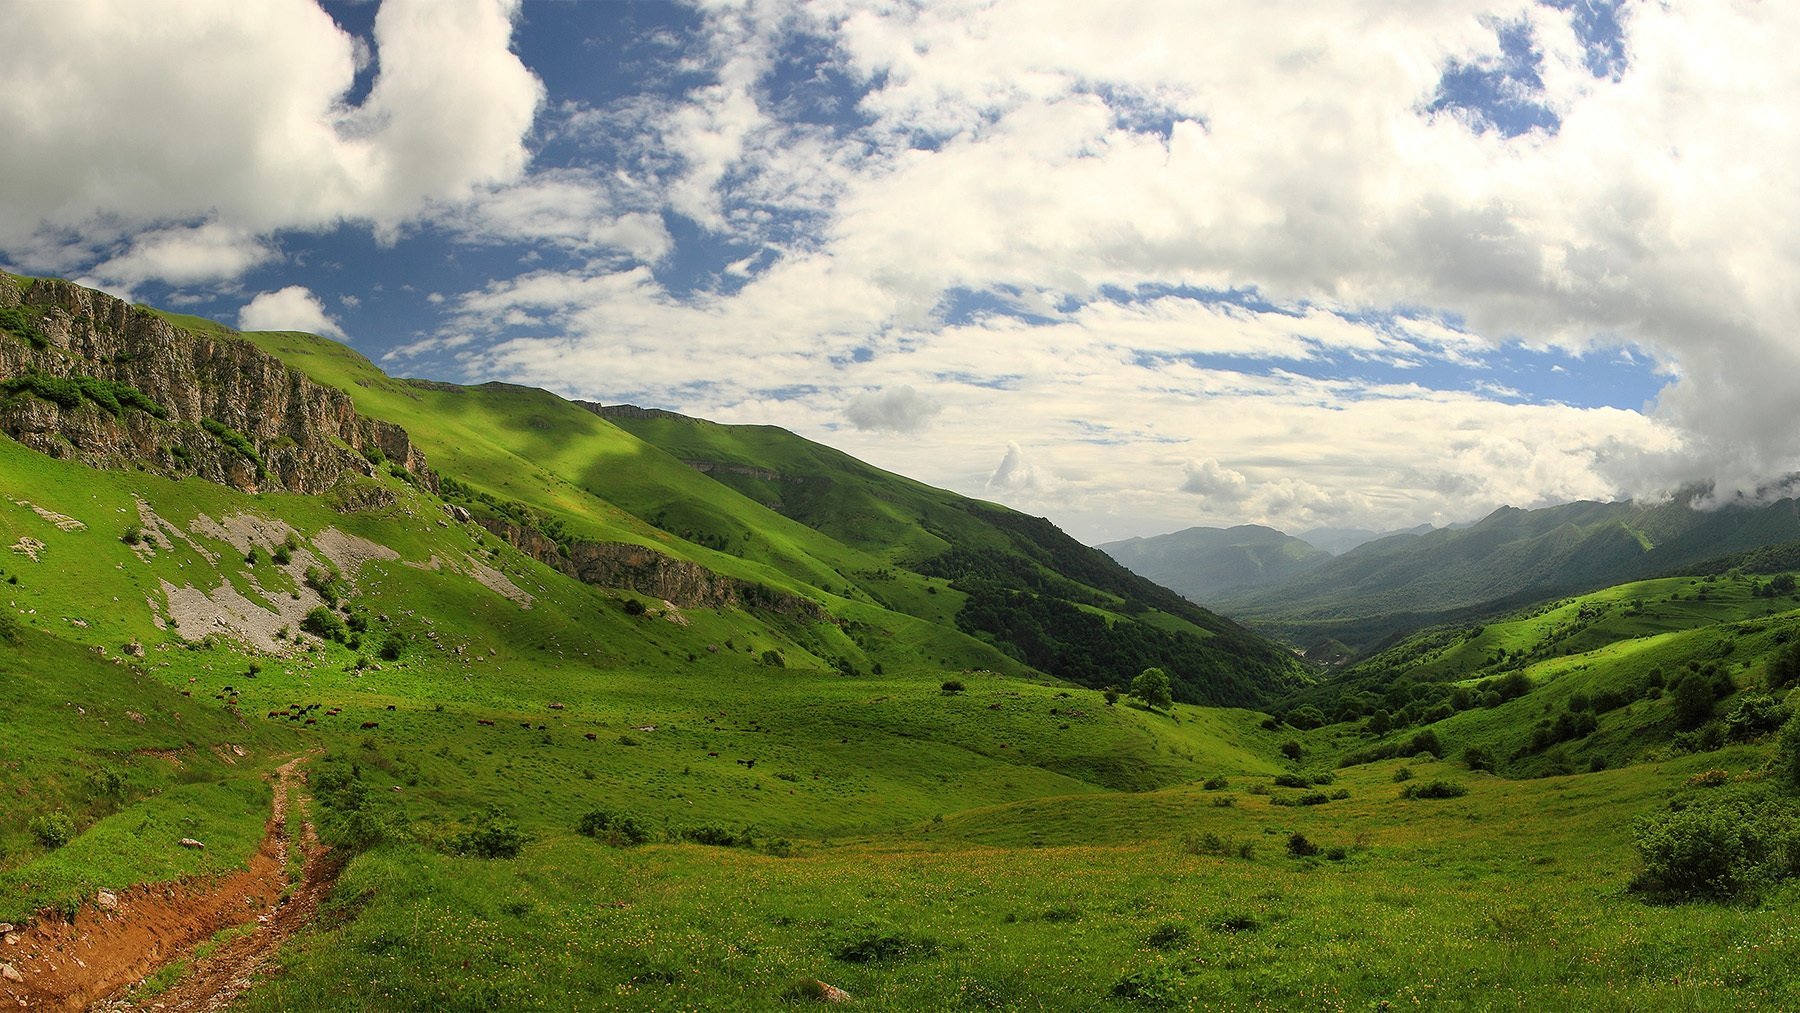 Климат осетии. Южная Осетия кавказский хребет. Северная Осетия в горах Кавказа. Ландшафт Северной Осетии. Равнины Северной Осетии.